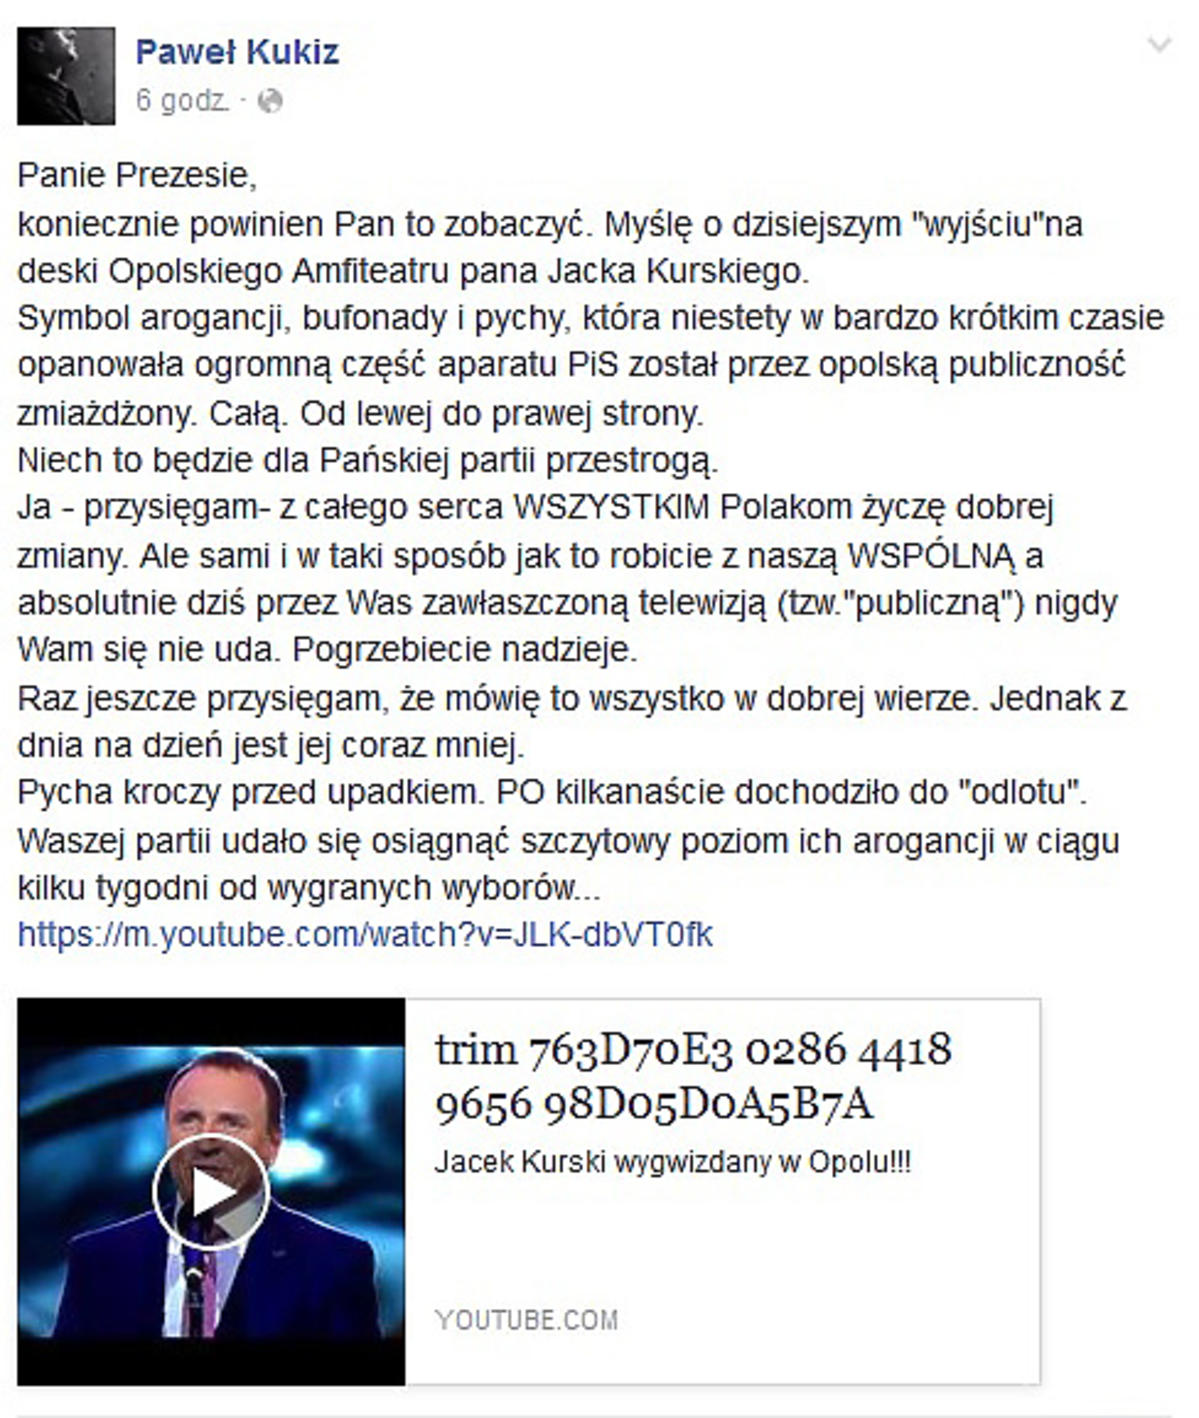 Jacek Kurski wygwizdany w Opolu